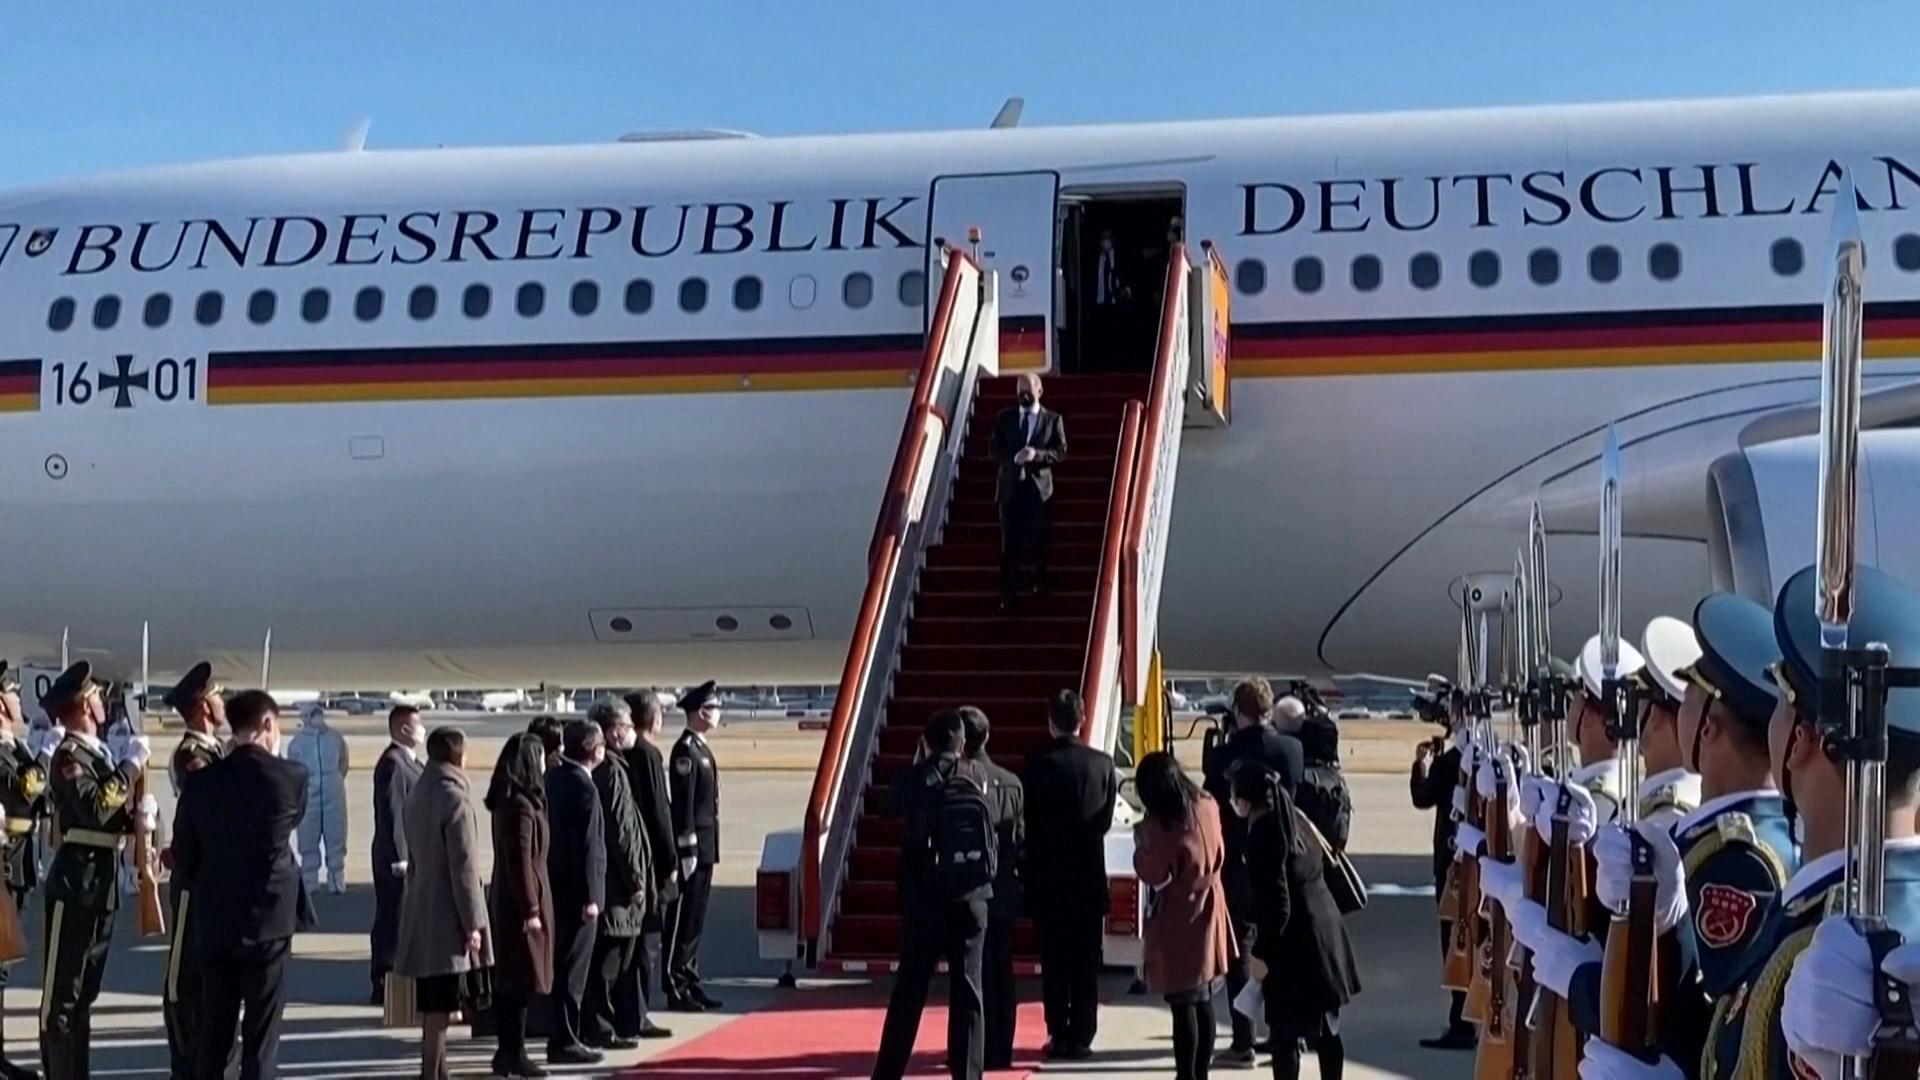 德国总理肖尔茨周五抵达北京访问，与中国领导人习近平及总理李克强会晤。他在记者会上谈及人权及俄罗斯侵略乌克兰等议题。针对台海问题，肖尔茨表示，台湾现状只能通过和平方式改变。